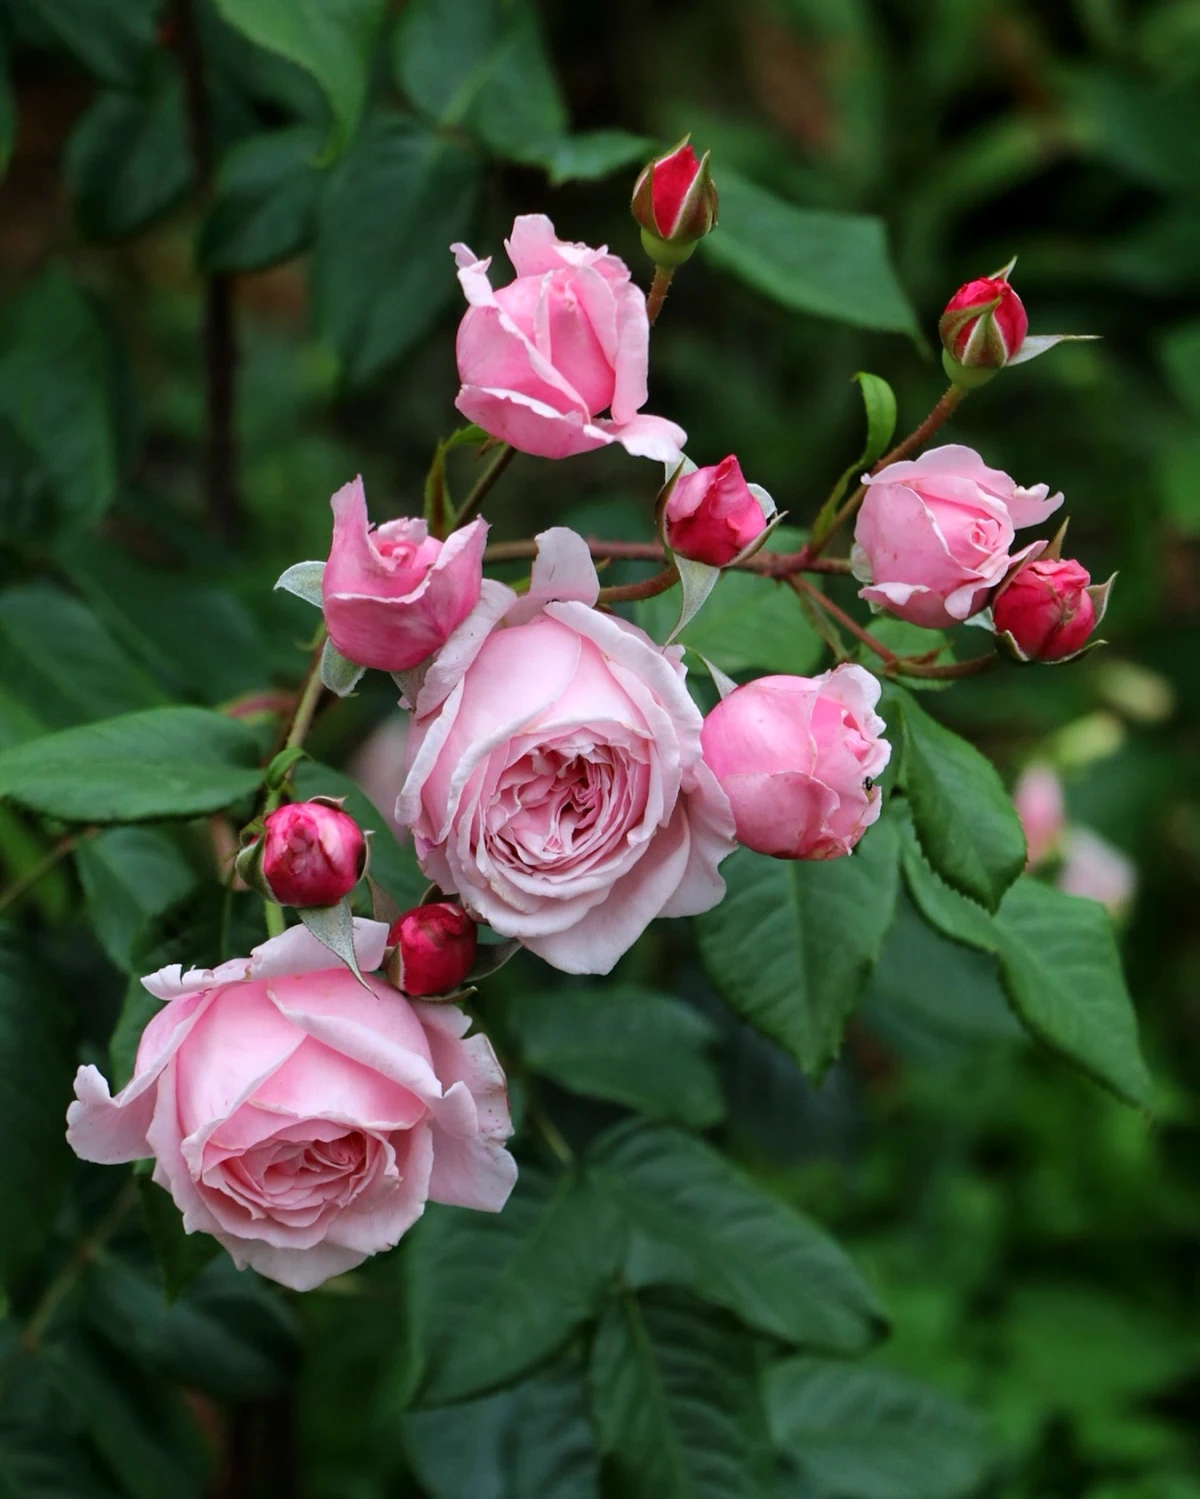 rosier arbiste floraison estivale fleurs roses feuilles vertes